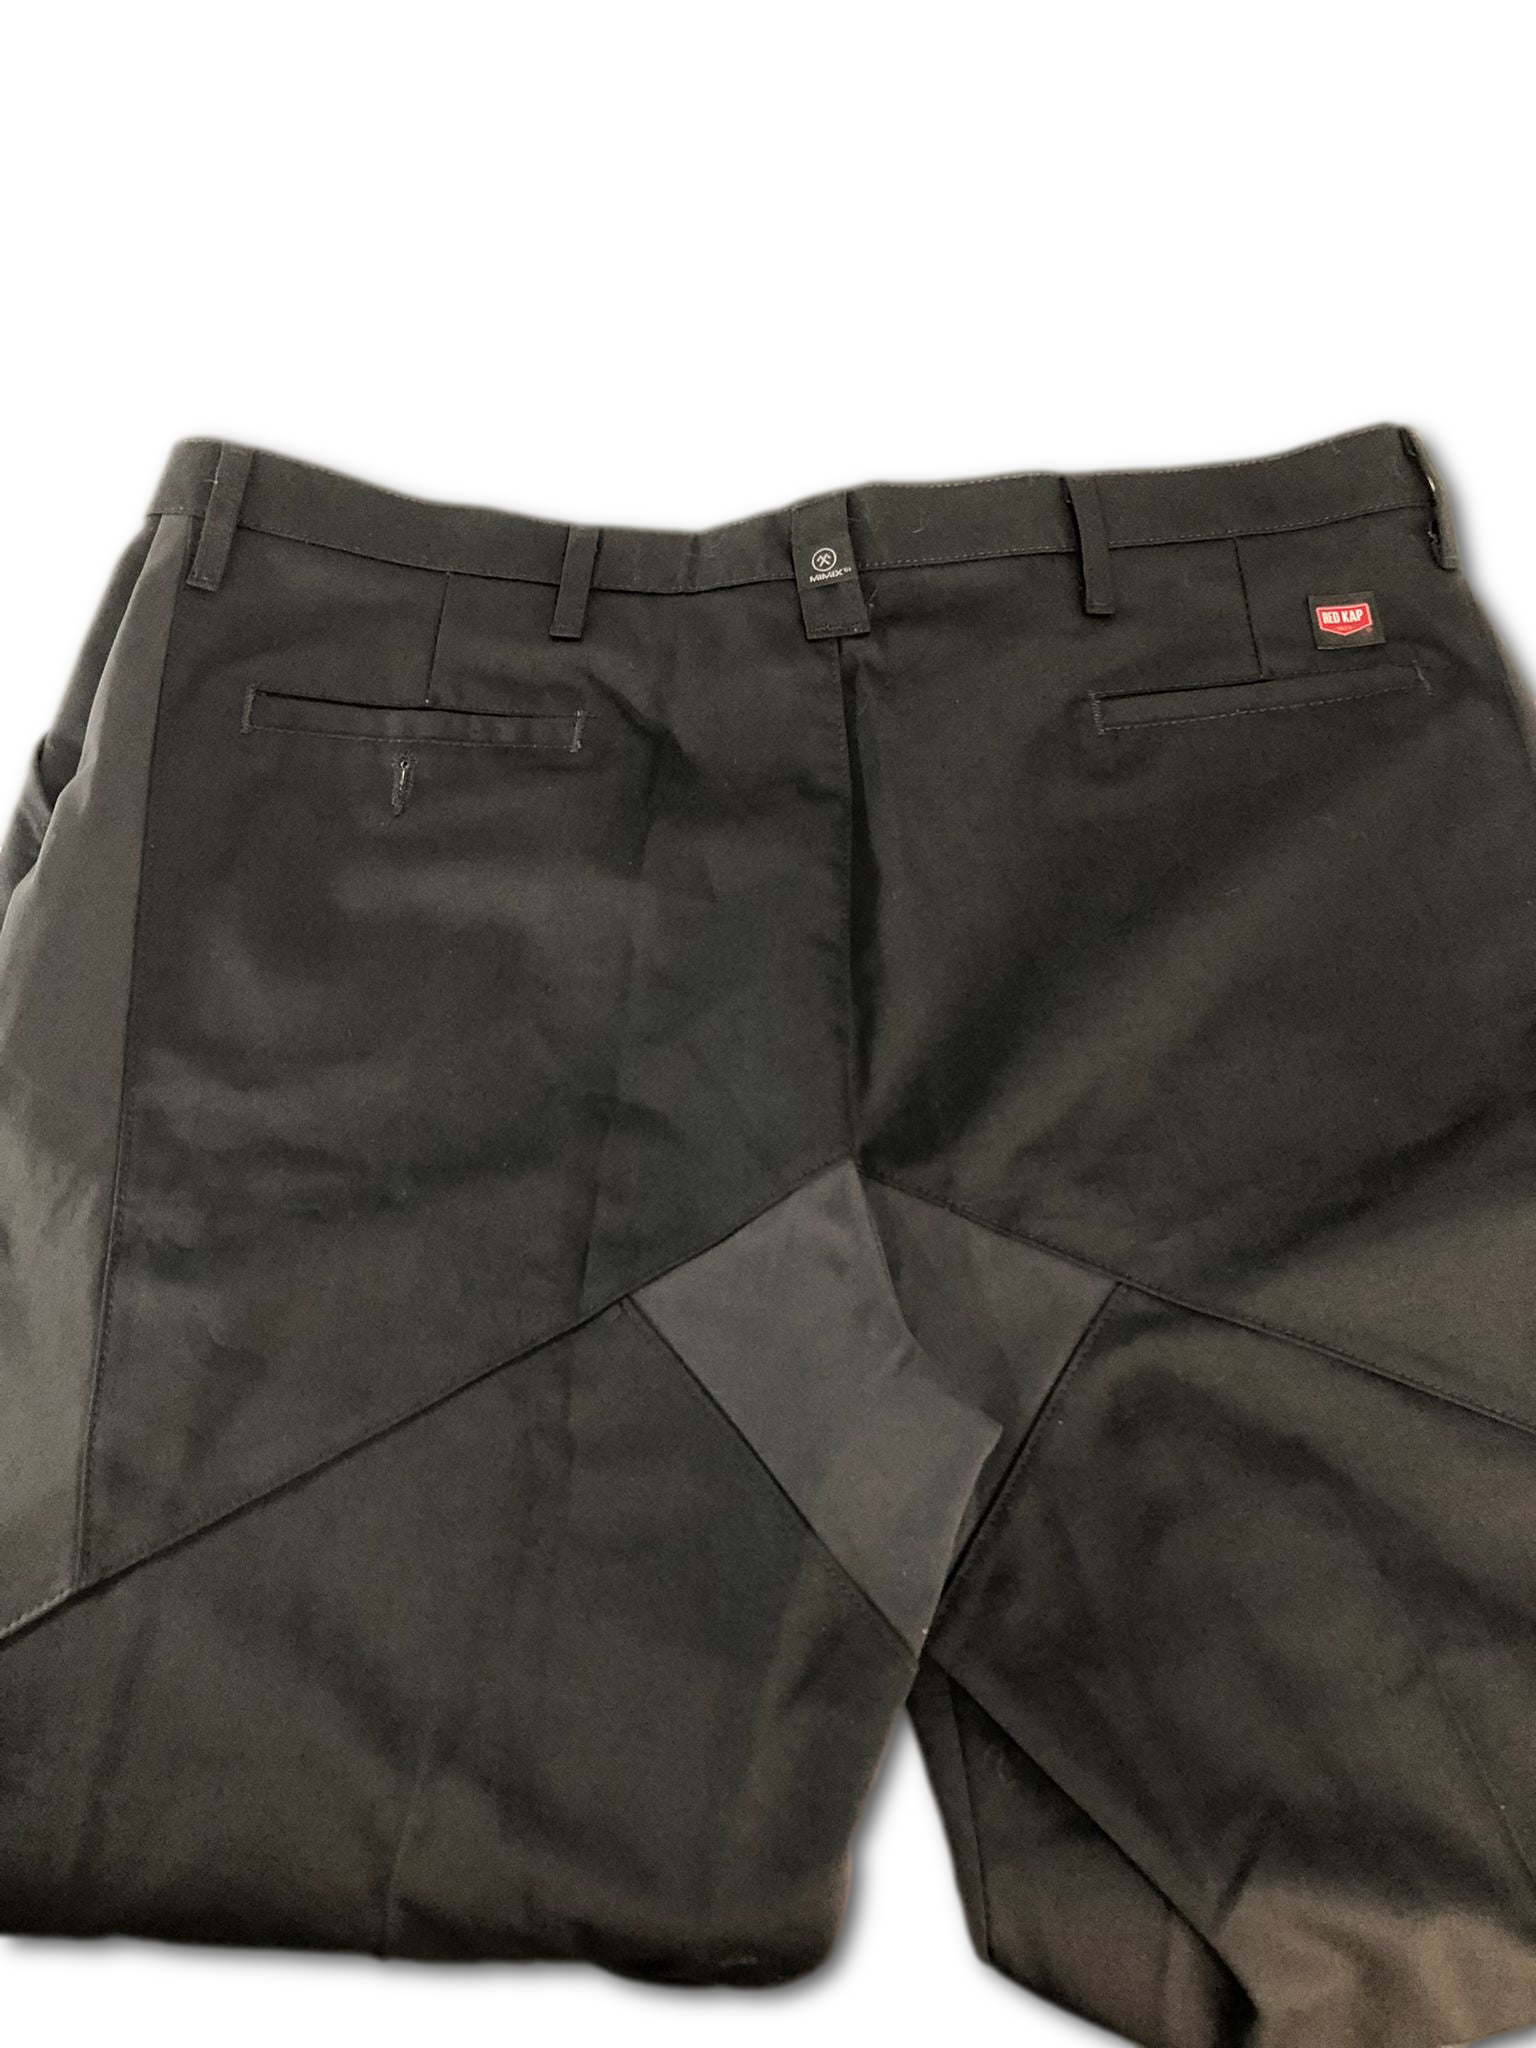 Red Kap Women's Utility Pant with Mimix - Black Color, Size 24x30